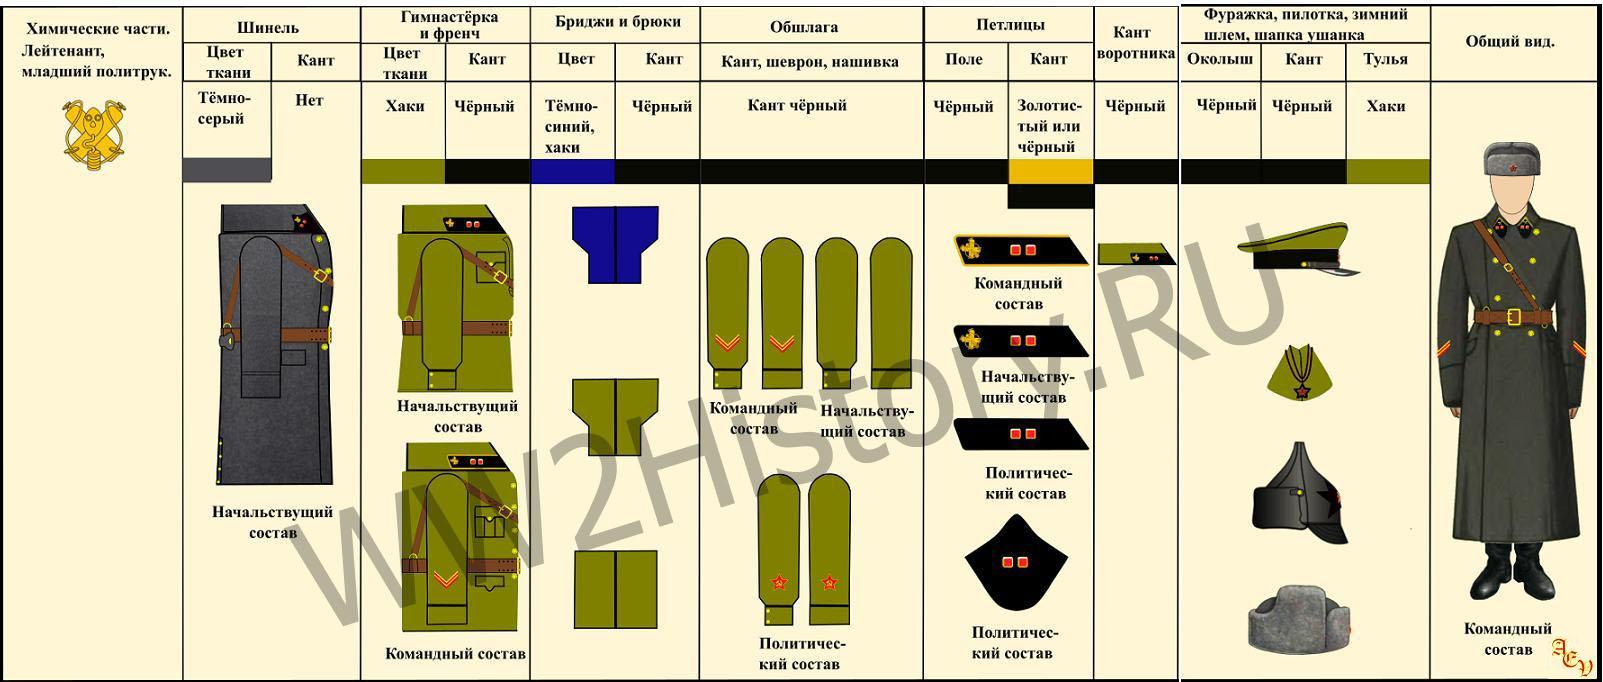 Таблица формы одежды командного, начальствующего и политического состава РККА на 22.6.1941 года 7ffd2395